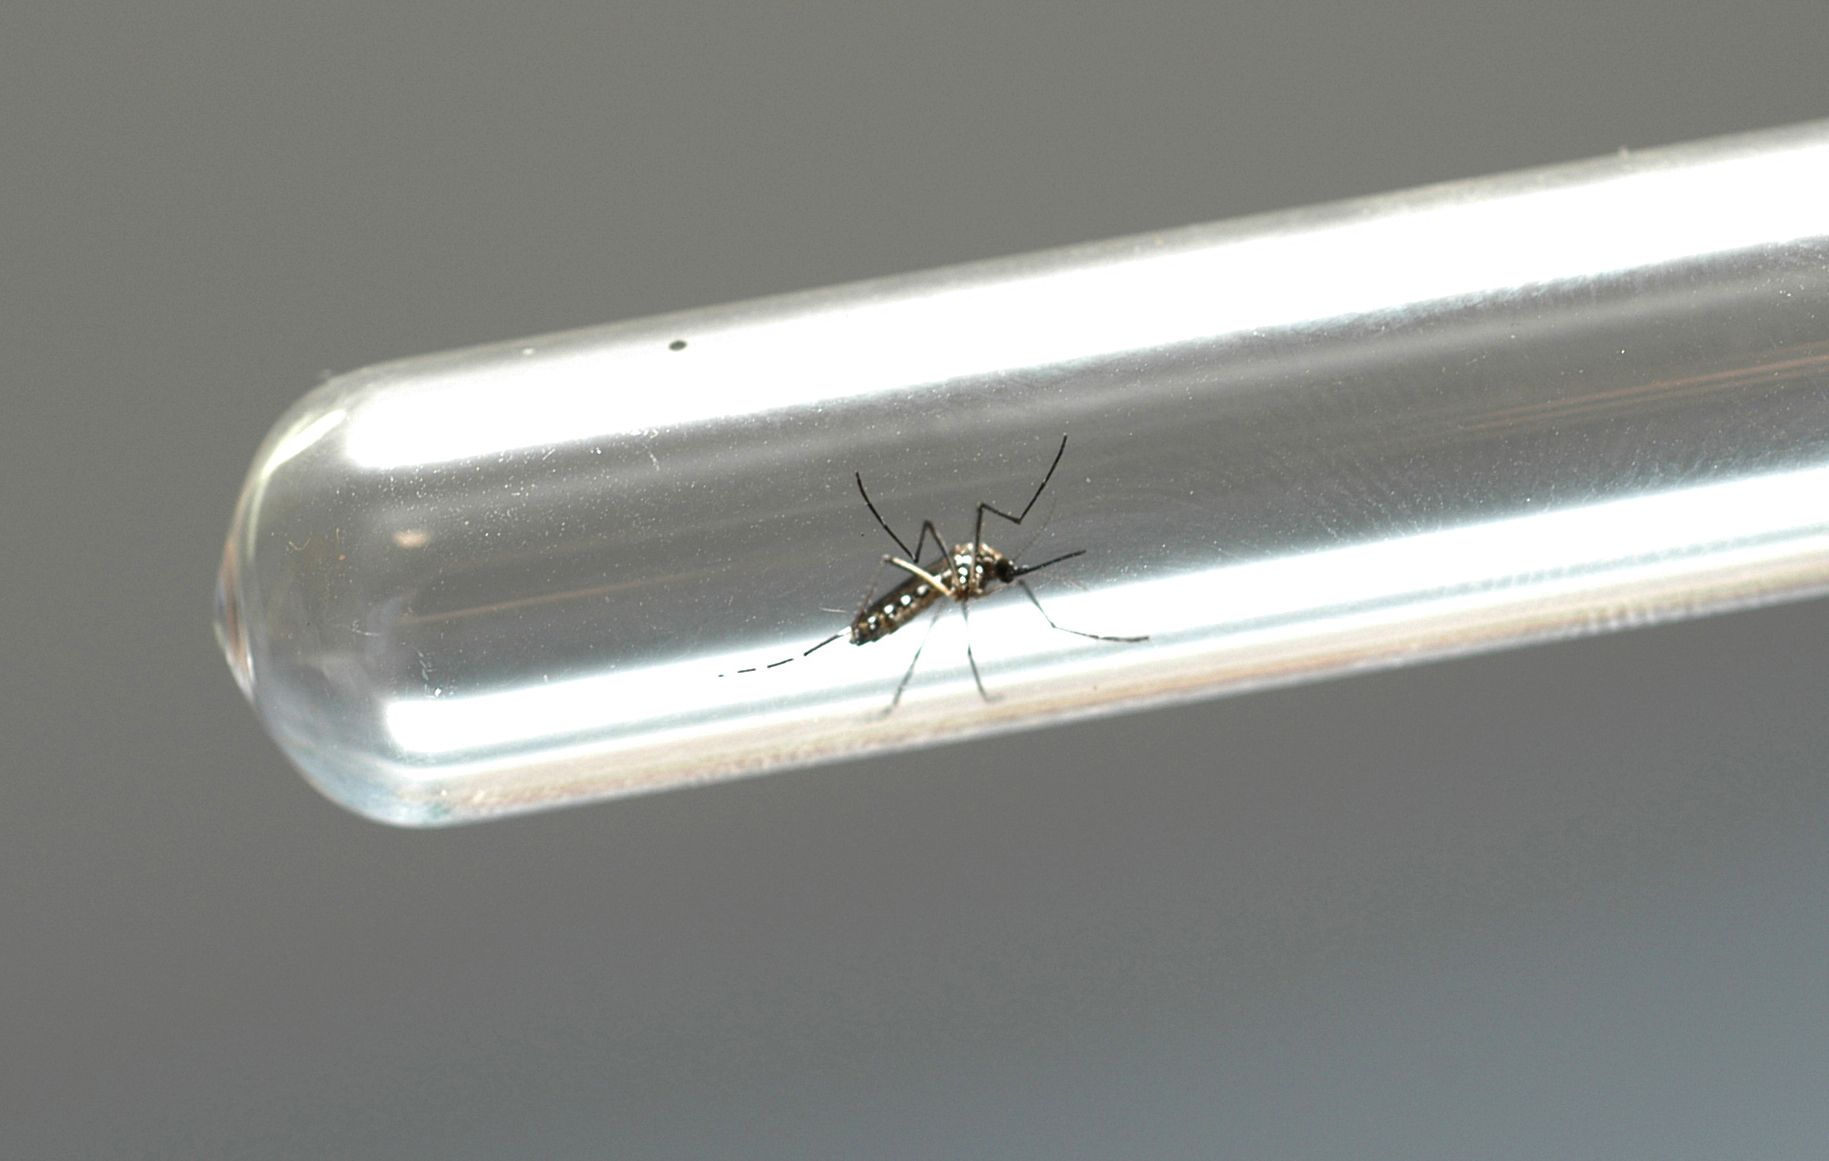 Foto do mosquito Aedes aegypti dentro de um tubo de ensaio.